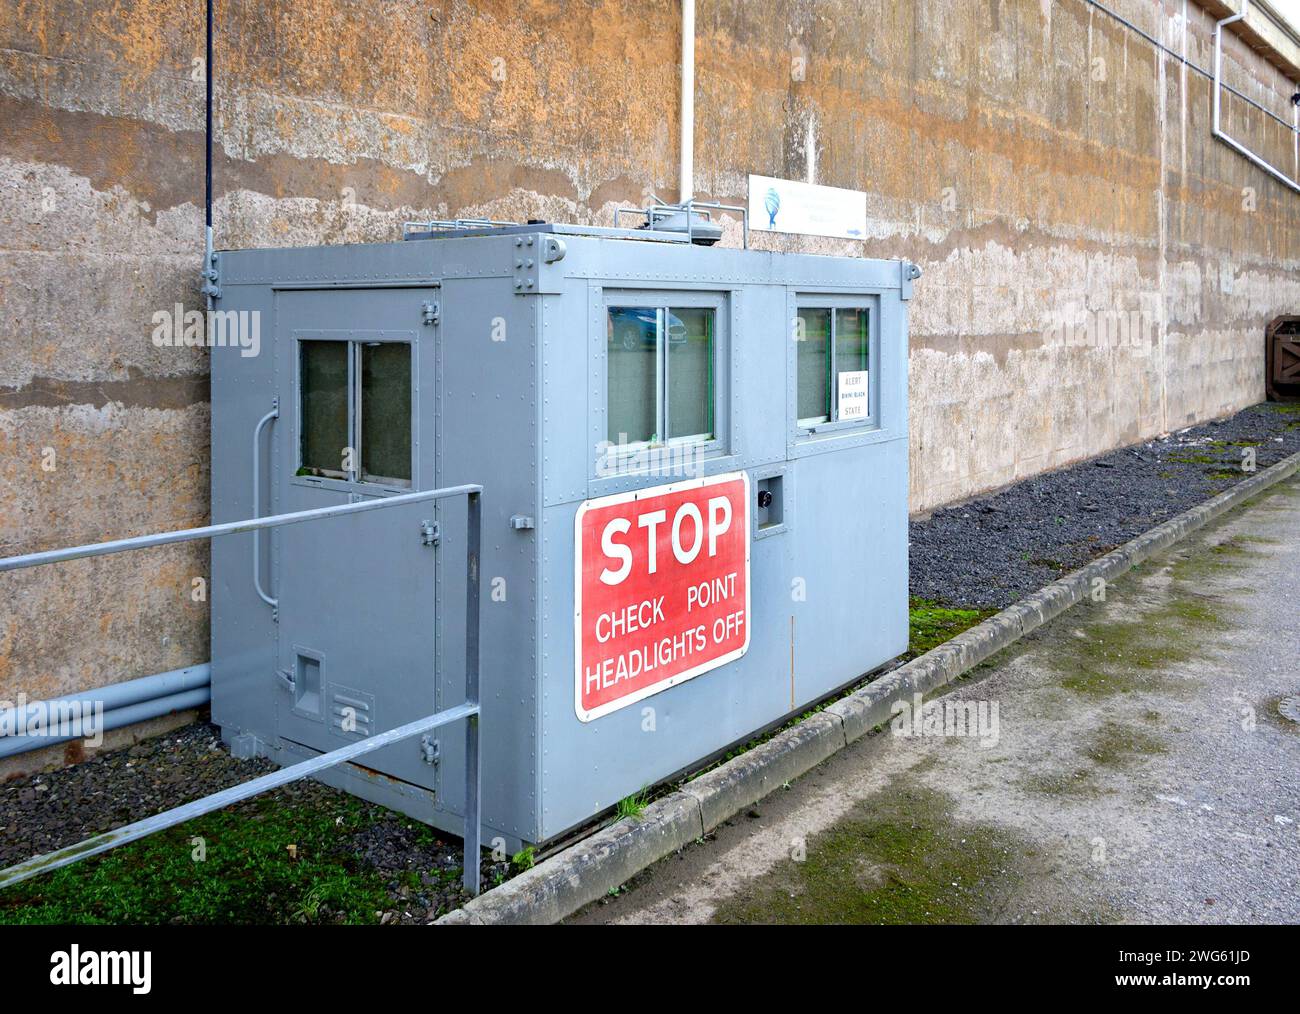 Graues Stahl-Kontrollpunktgebäude mit Stoppschild MOD Hack Green Secret Bunker cheshire, verwendet in einem Atombombenschutzraum im Kalten Krieg, Kommandoposten jetzt ein Museum Stockfoto